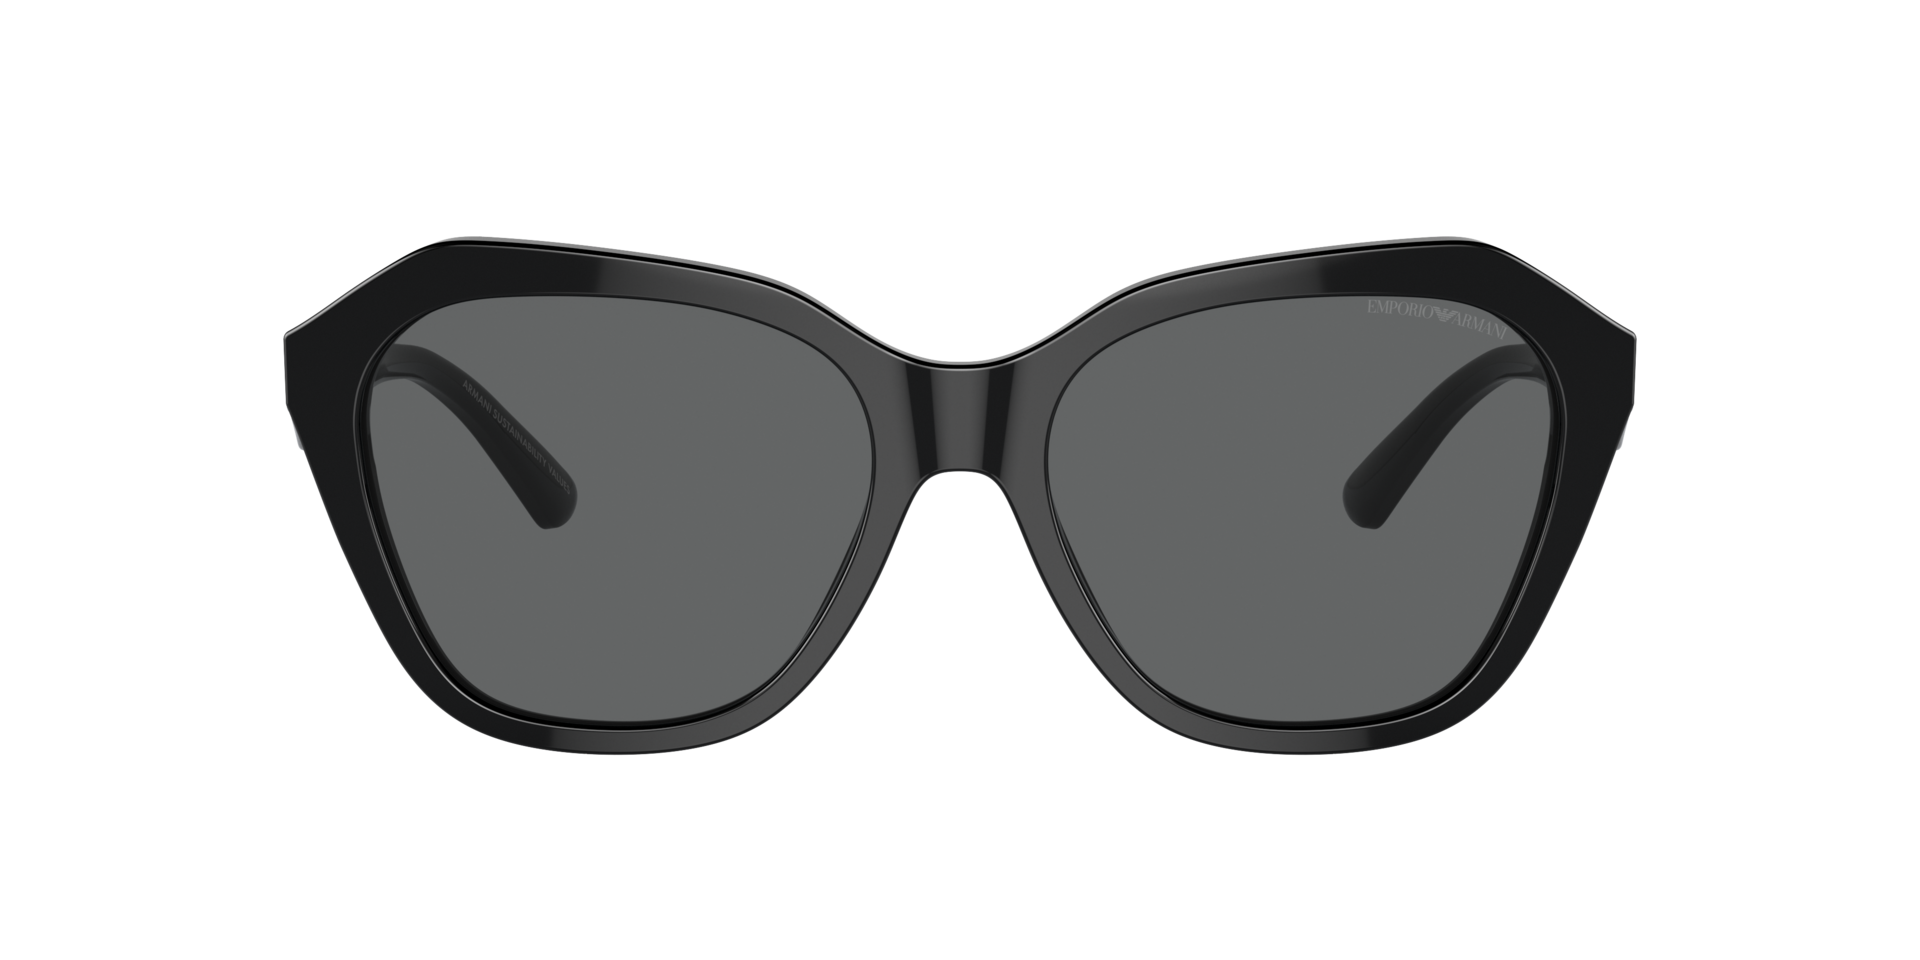 Das Bild zeigt die Sonnenbrille EA4221 501787 von der Marke Emporio Armani in schwarz.